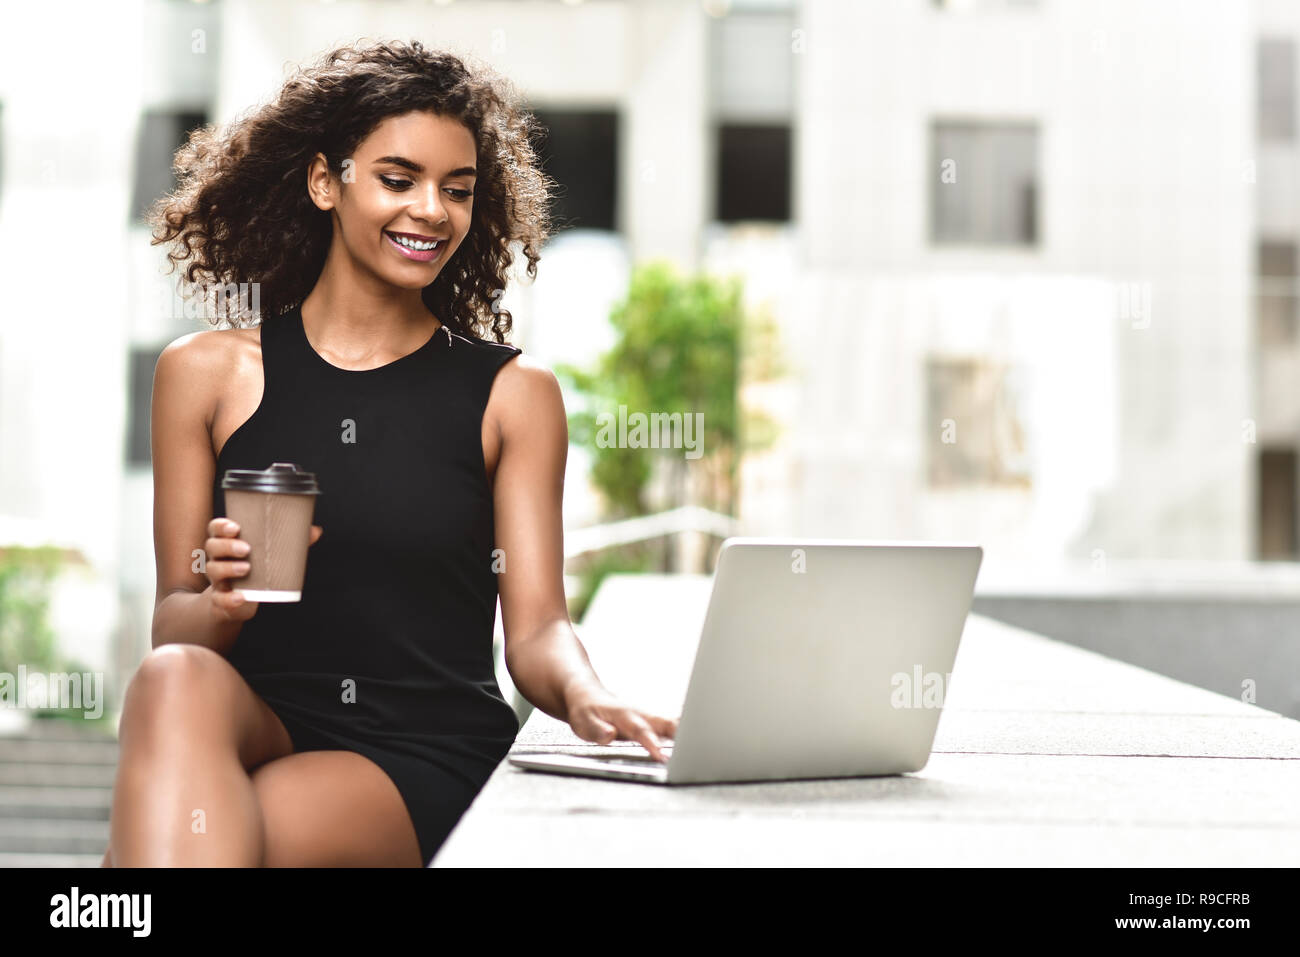 Giovani attraenti razza mista ragazza con bellissimi capelli afro che sorride guardando il suo schermo portatile durante la chiamata video. Giovane donna utilizzando laptop. Foto Stock